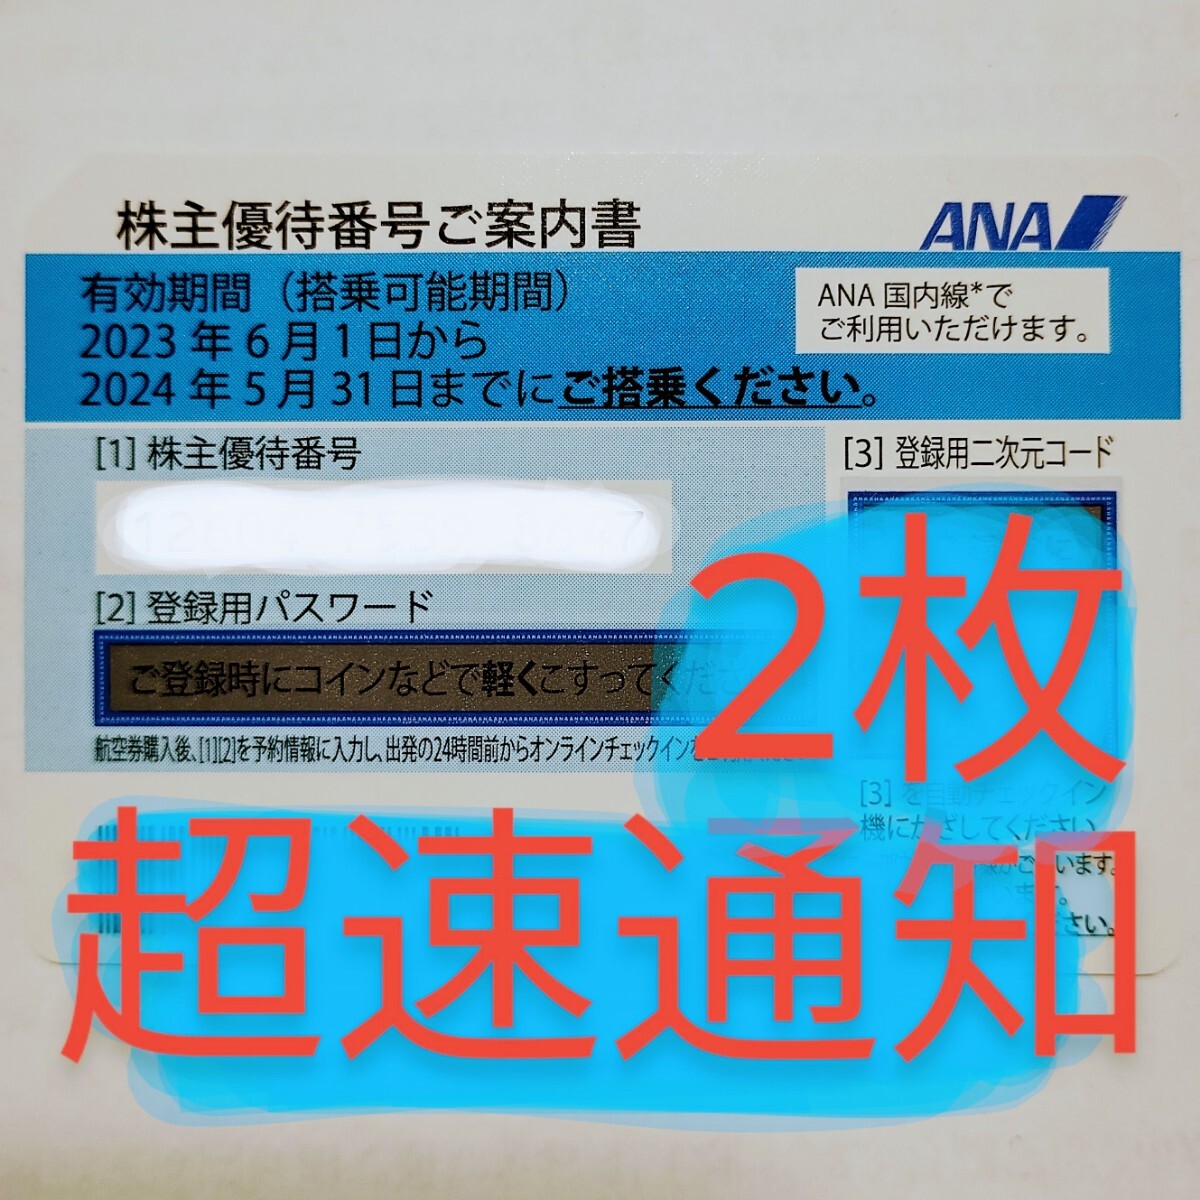 ANA акционер пригласительный билет акционер льготный билет 2 листов . спешащий номер сообщение код сообщение скорость соответствует 2024 год 5 месяц 31 день все день пустой 